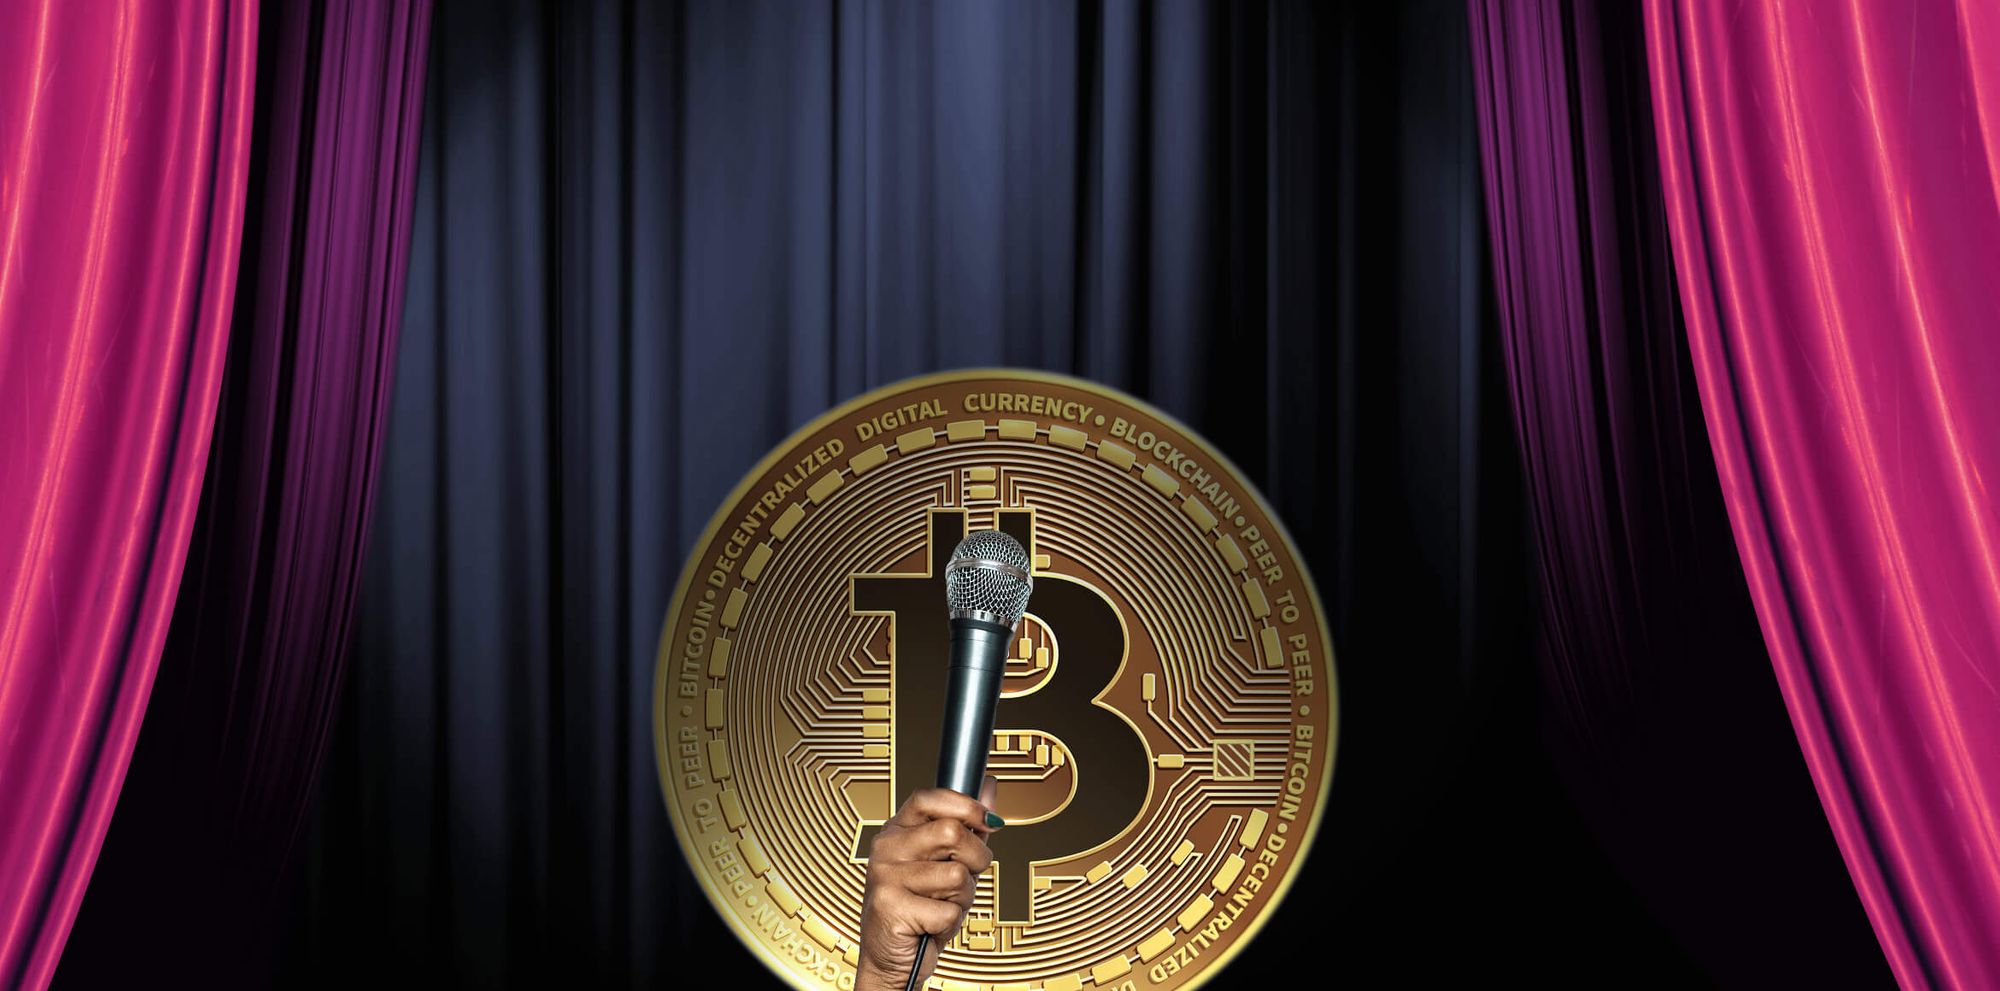 The Best Bitcoin Joke Collection on the Internet | BTC Jokes